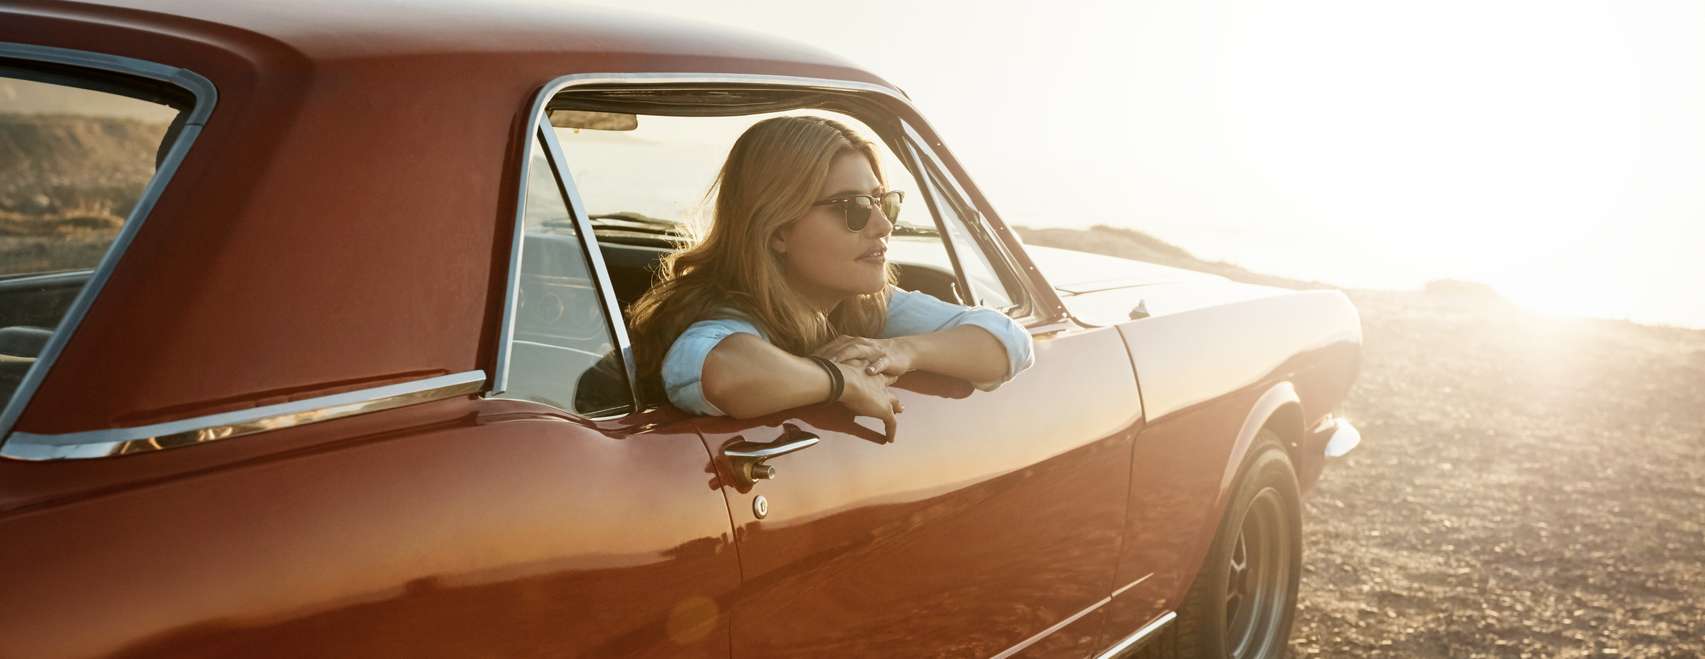 Frau mit Sonnenbrille blickt am Meer aus Autofenster